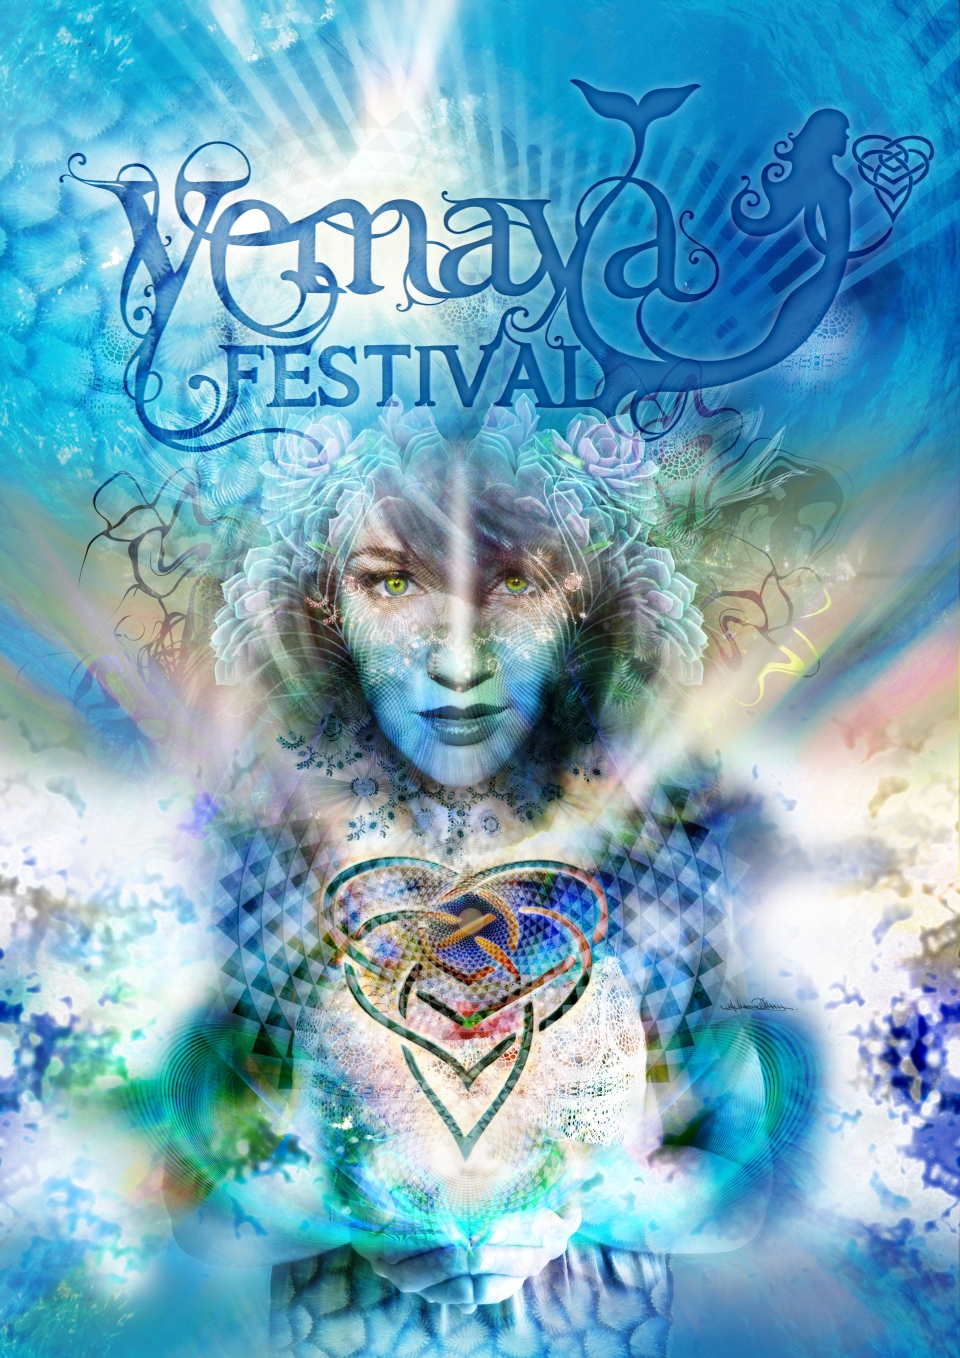 Yemaya Festival - 21-23 March 2014